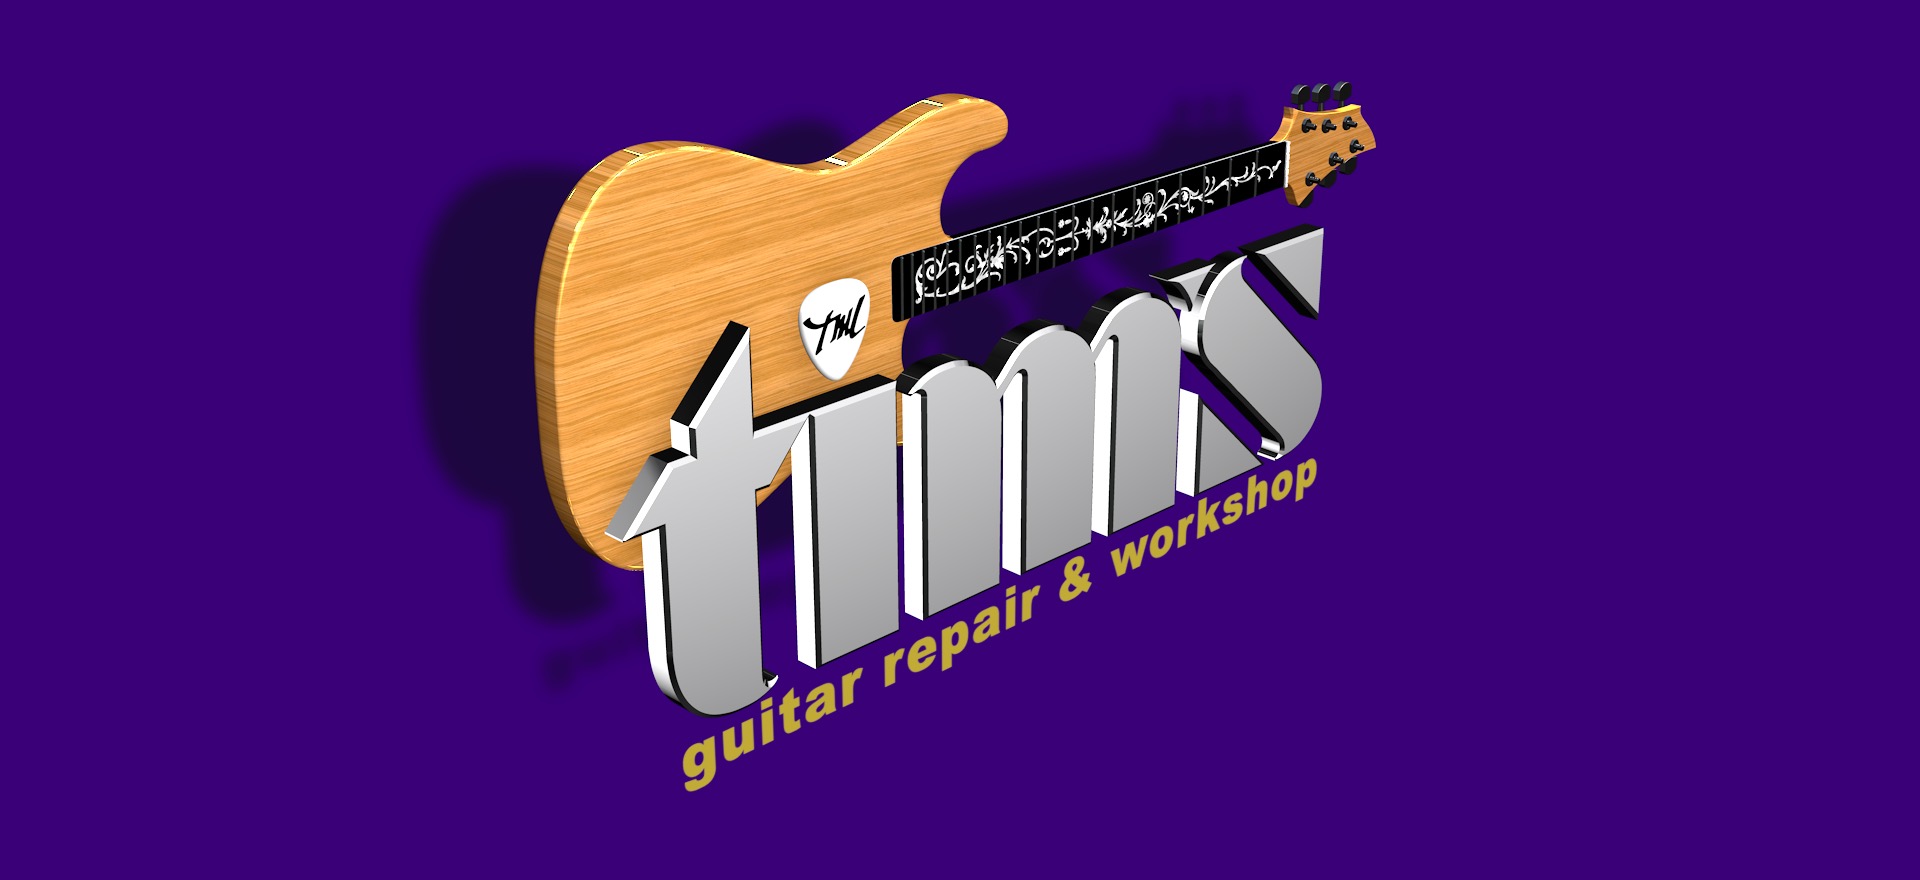 Tim's Guitar Repair and Workshop